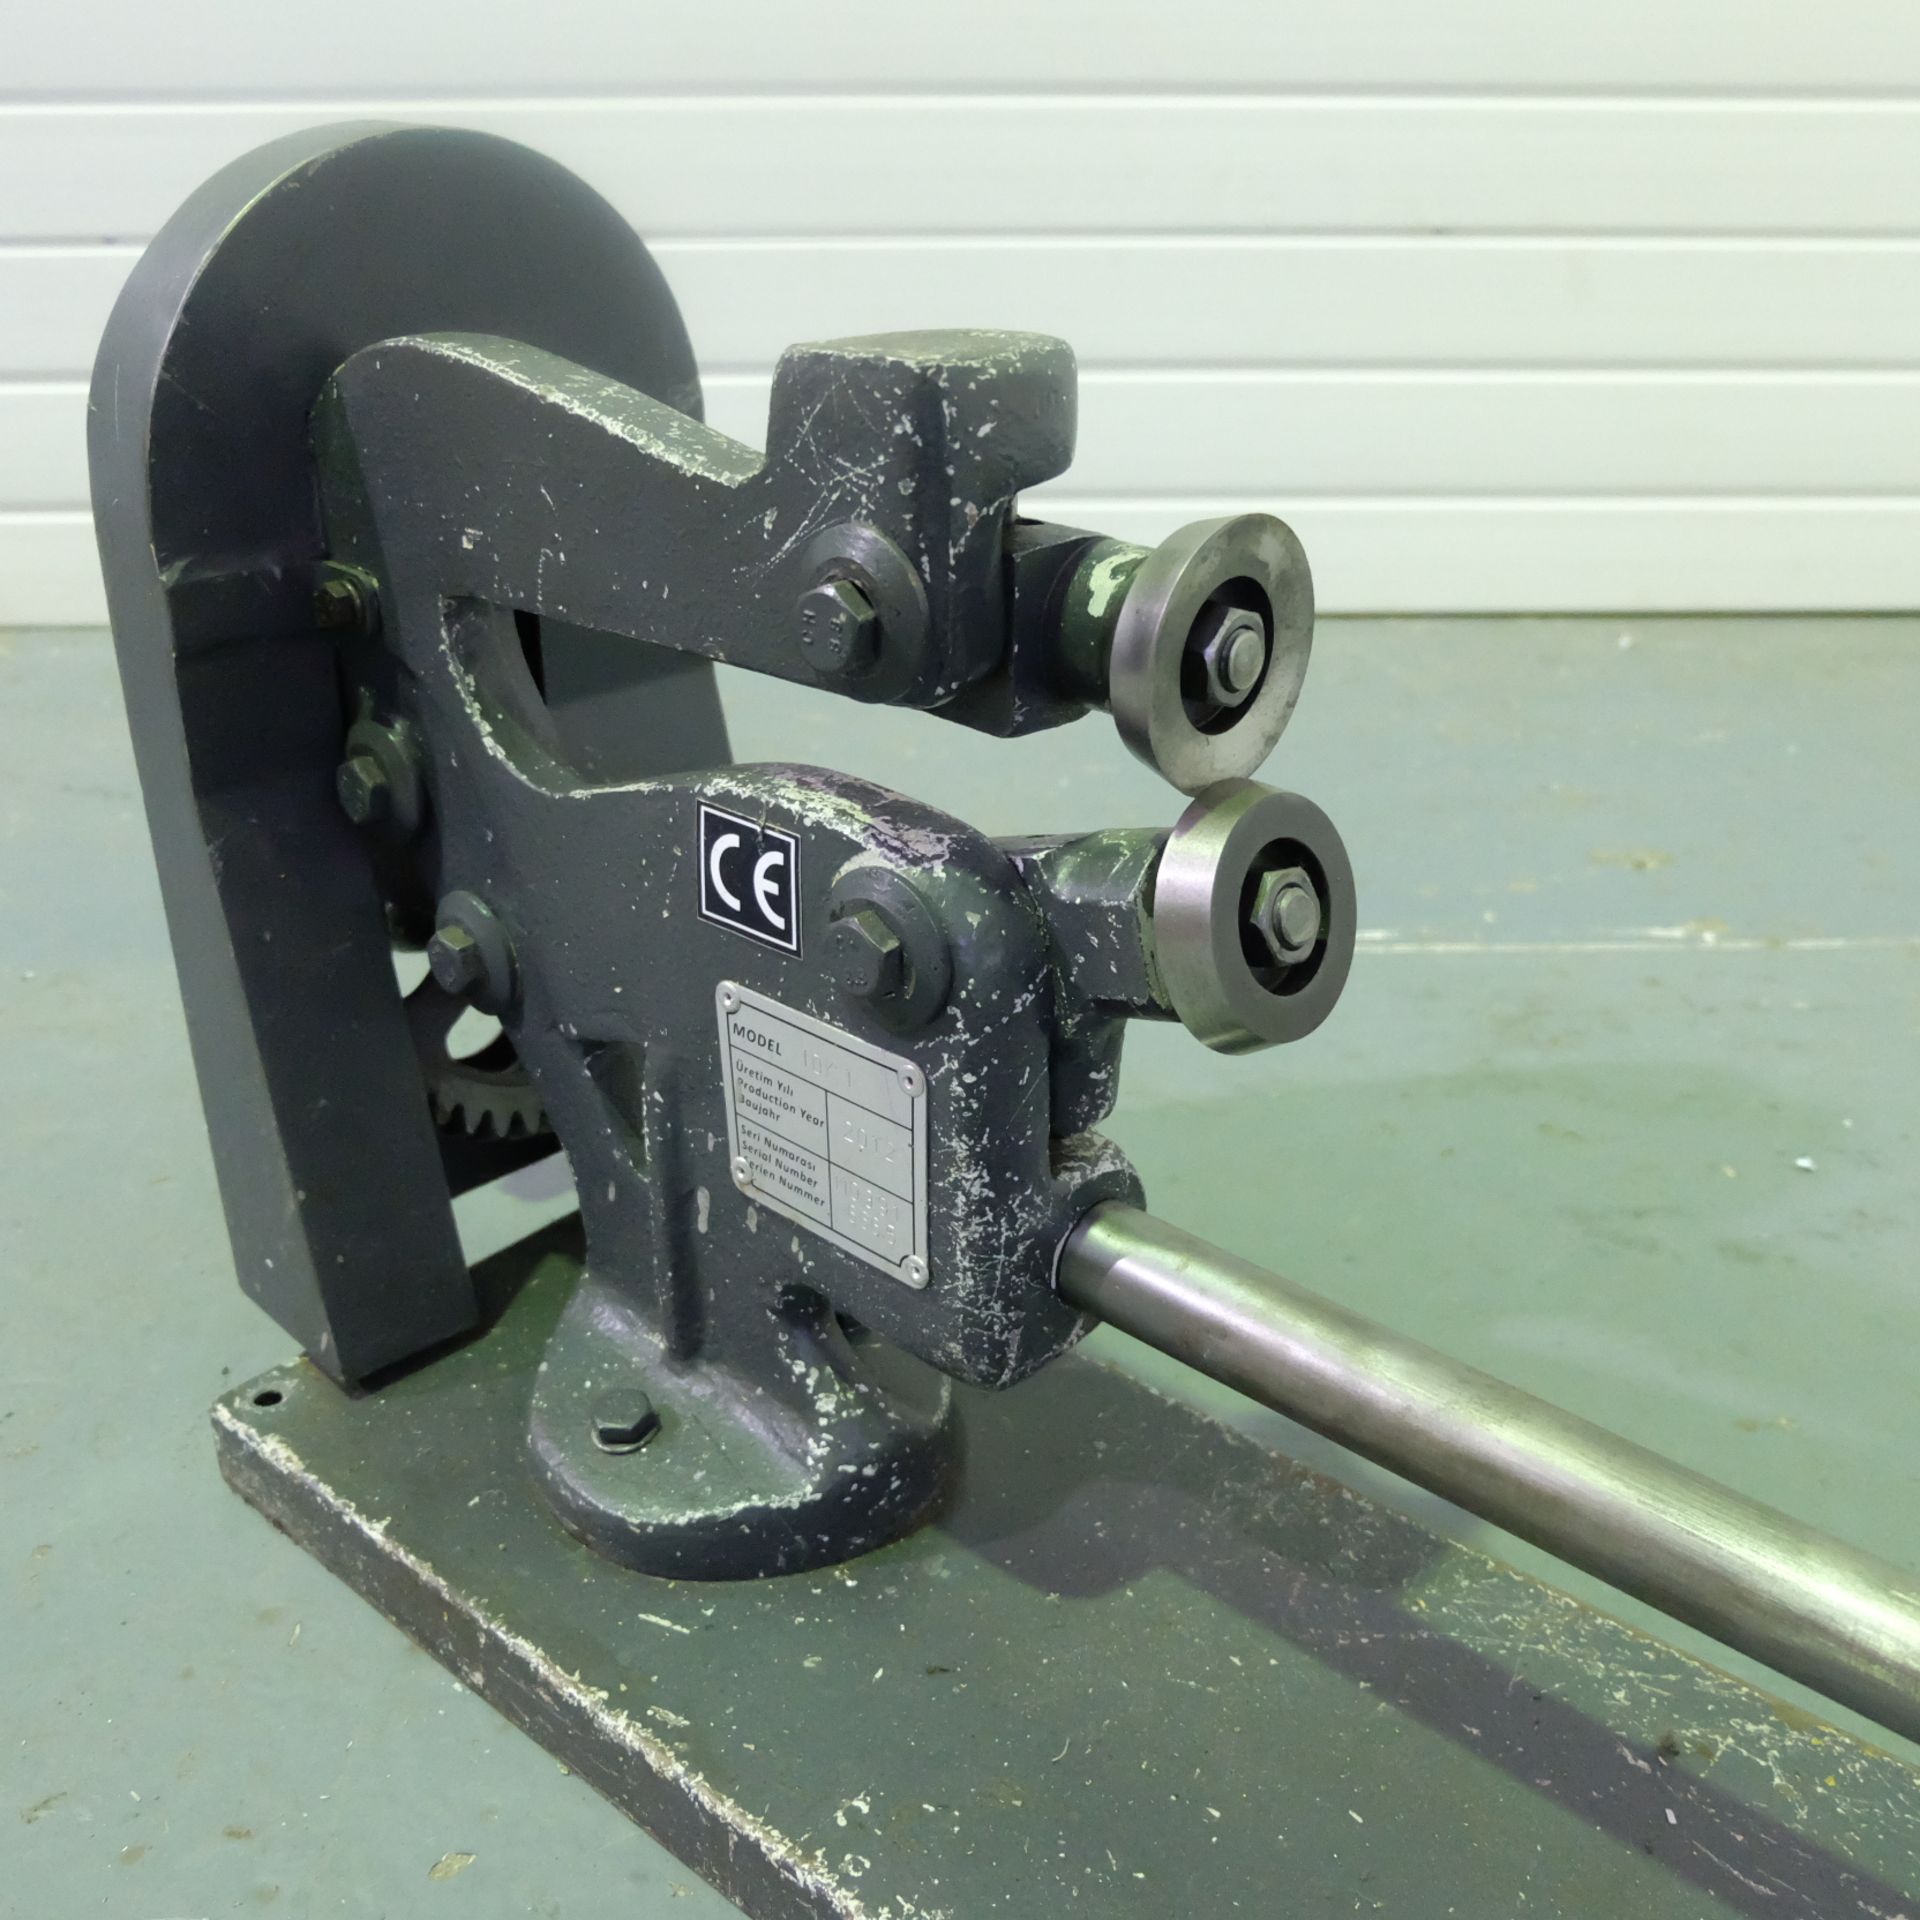 Sahinler Model IDK 1 Circle Cutting Machine. Max Sheet Cutting Diameter 900mm. - Image 4 of 5